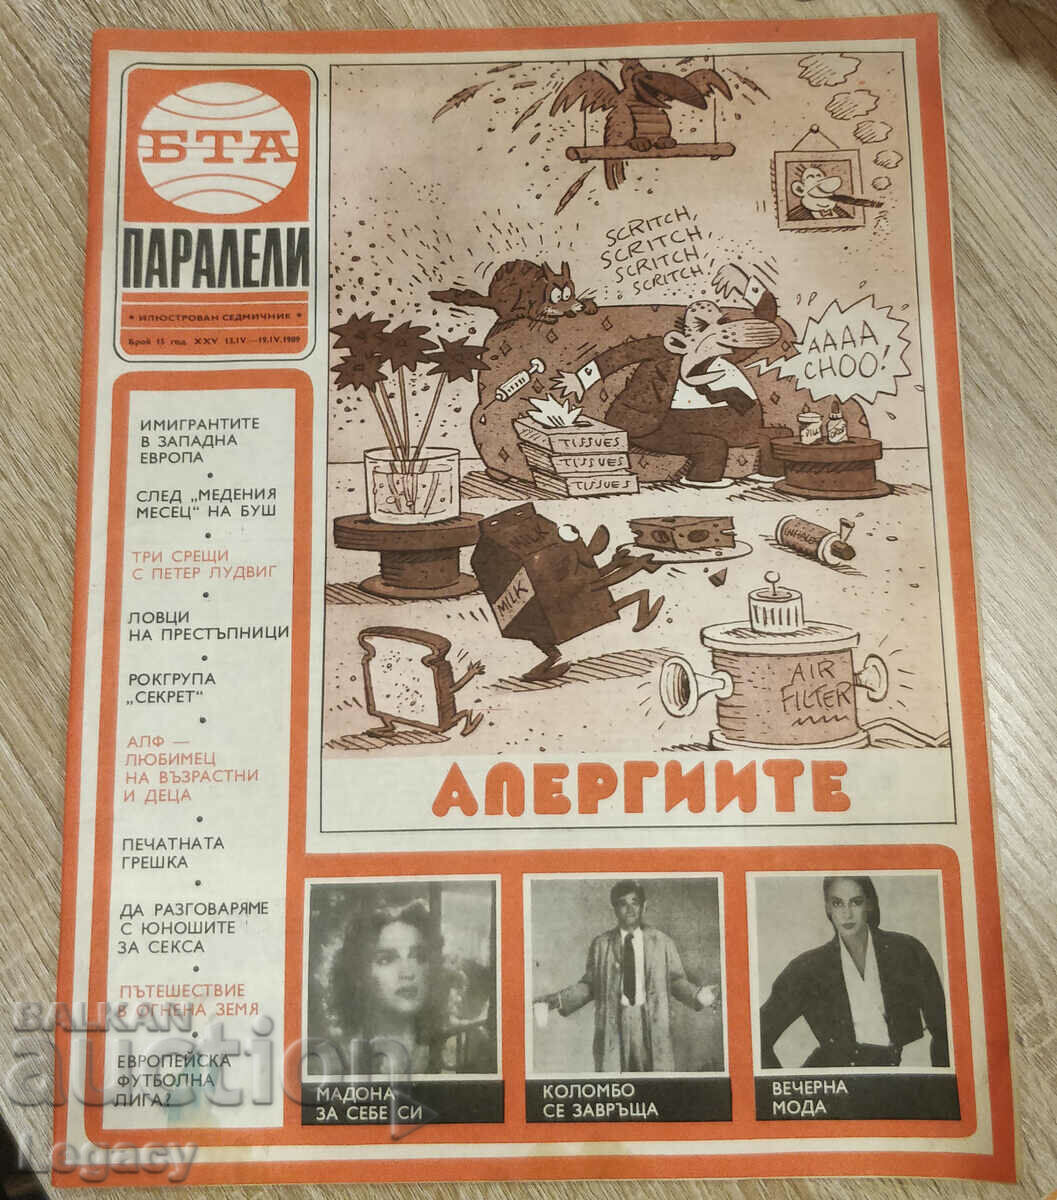 1989 BTA Parallels magazine, issue 15